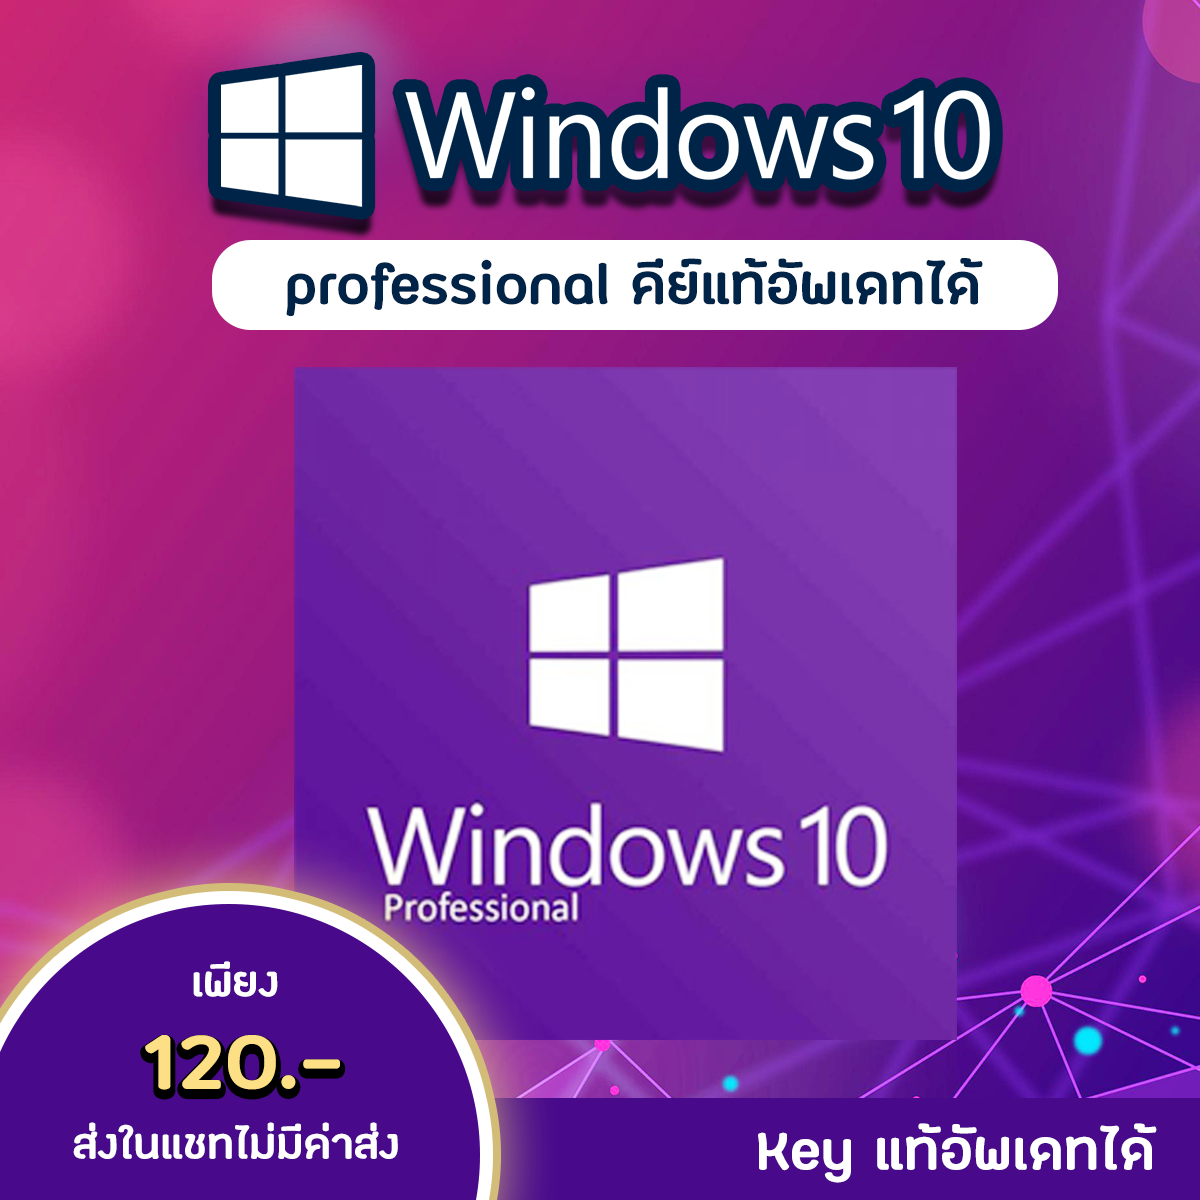 (คีย์แท้ส่งในแชท) Windows 10 Pro License key win10 วินโดว์ 10 (คีย์แท้) อัพเดทได้